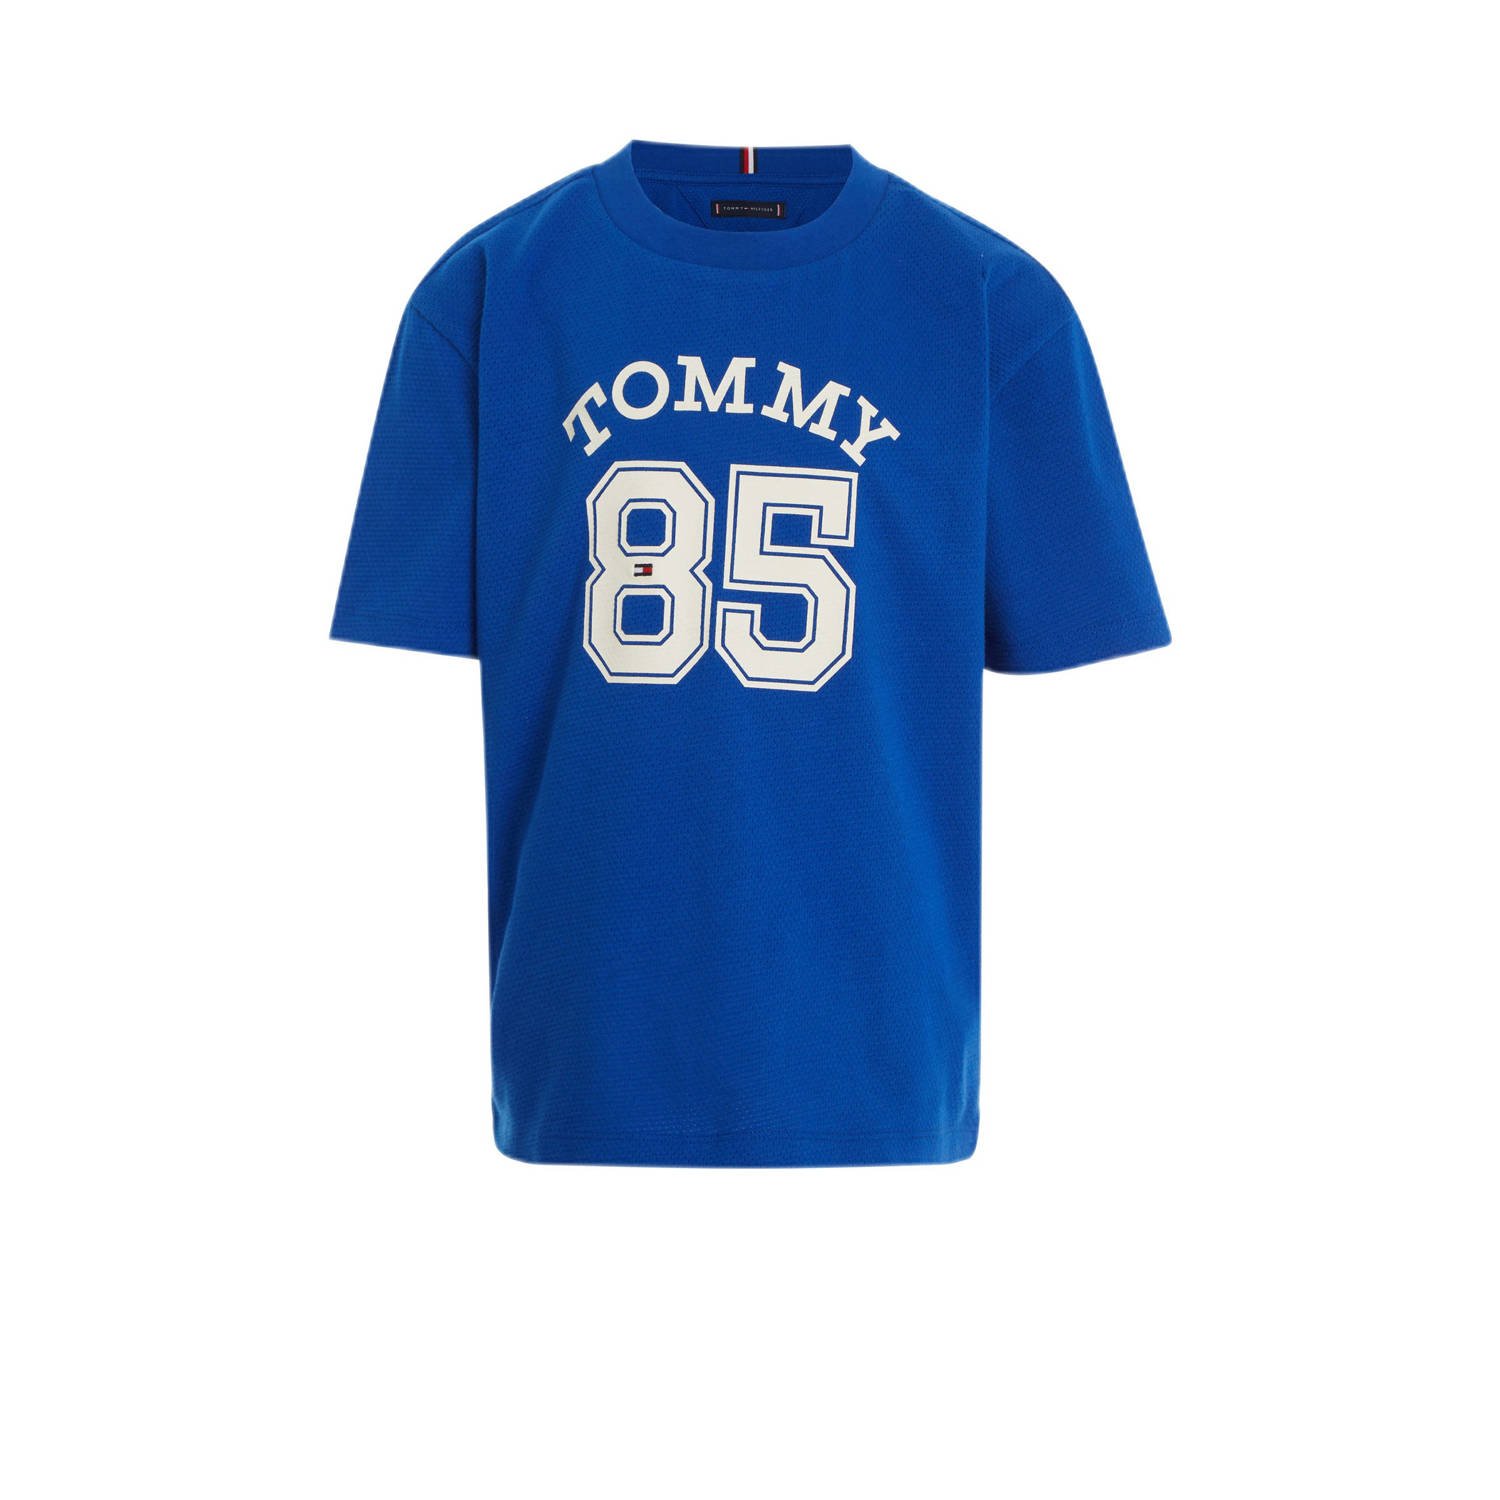 Tommy Hilfiger T-shirt met tekst helderblauw wit Jongens Katoen Ronde hals 104